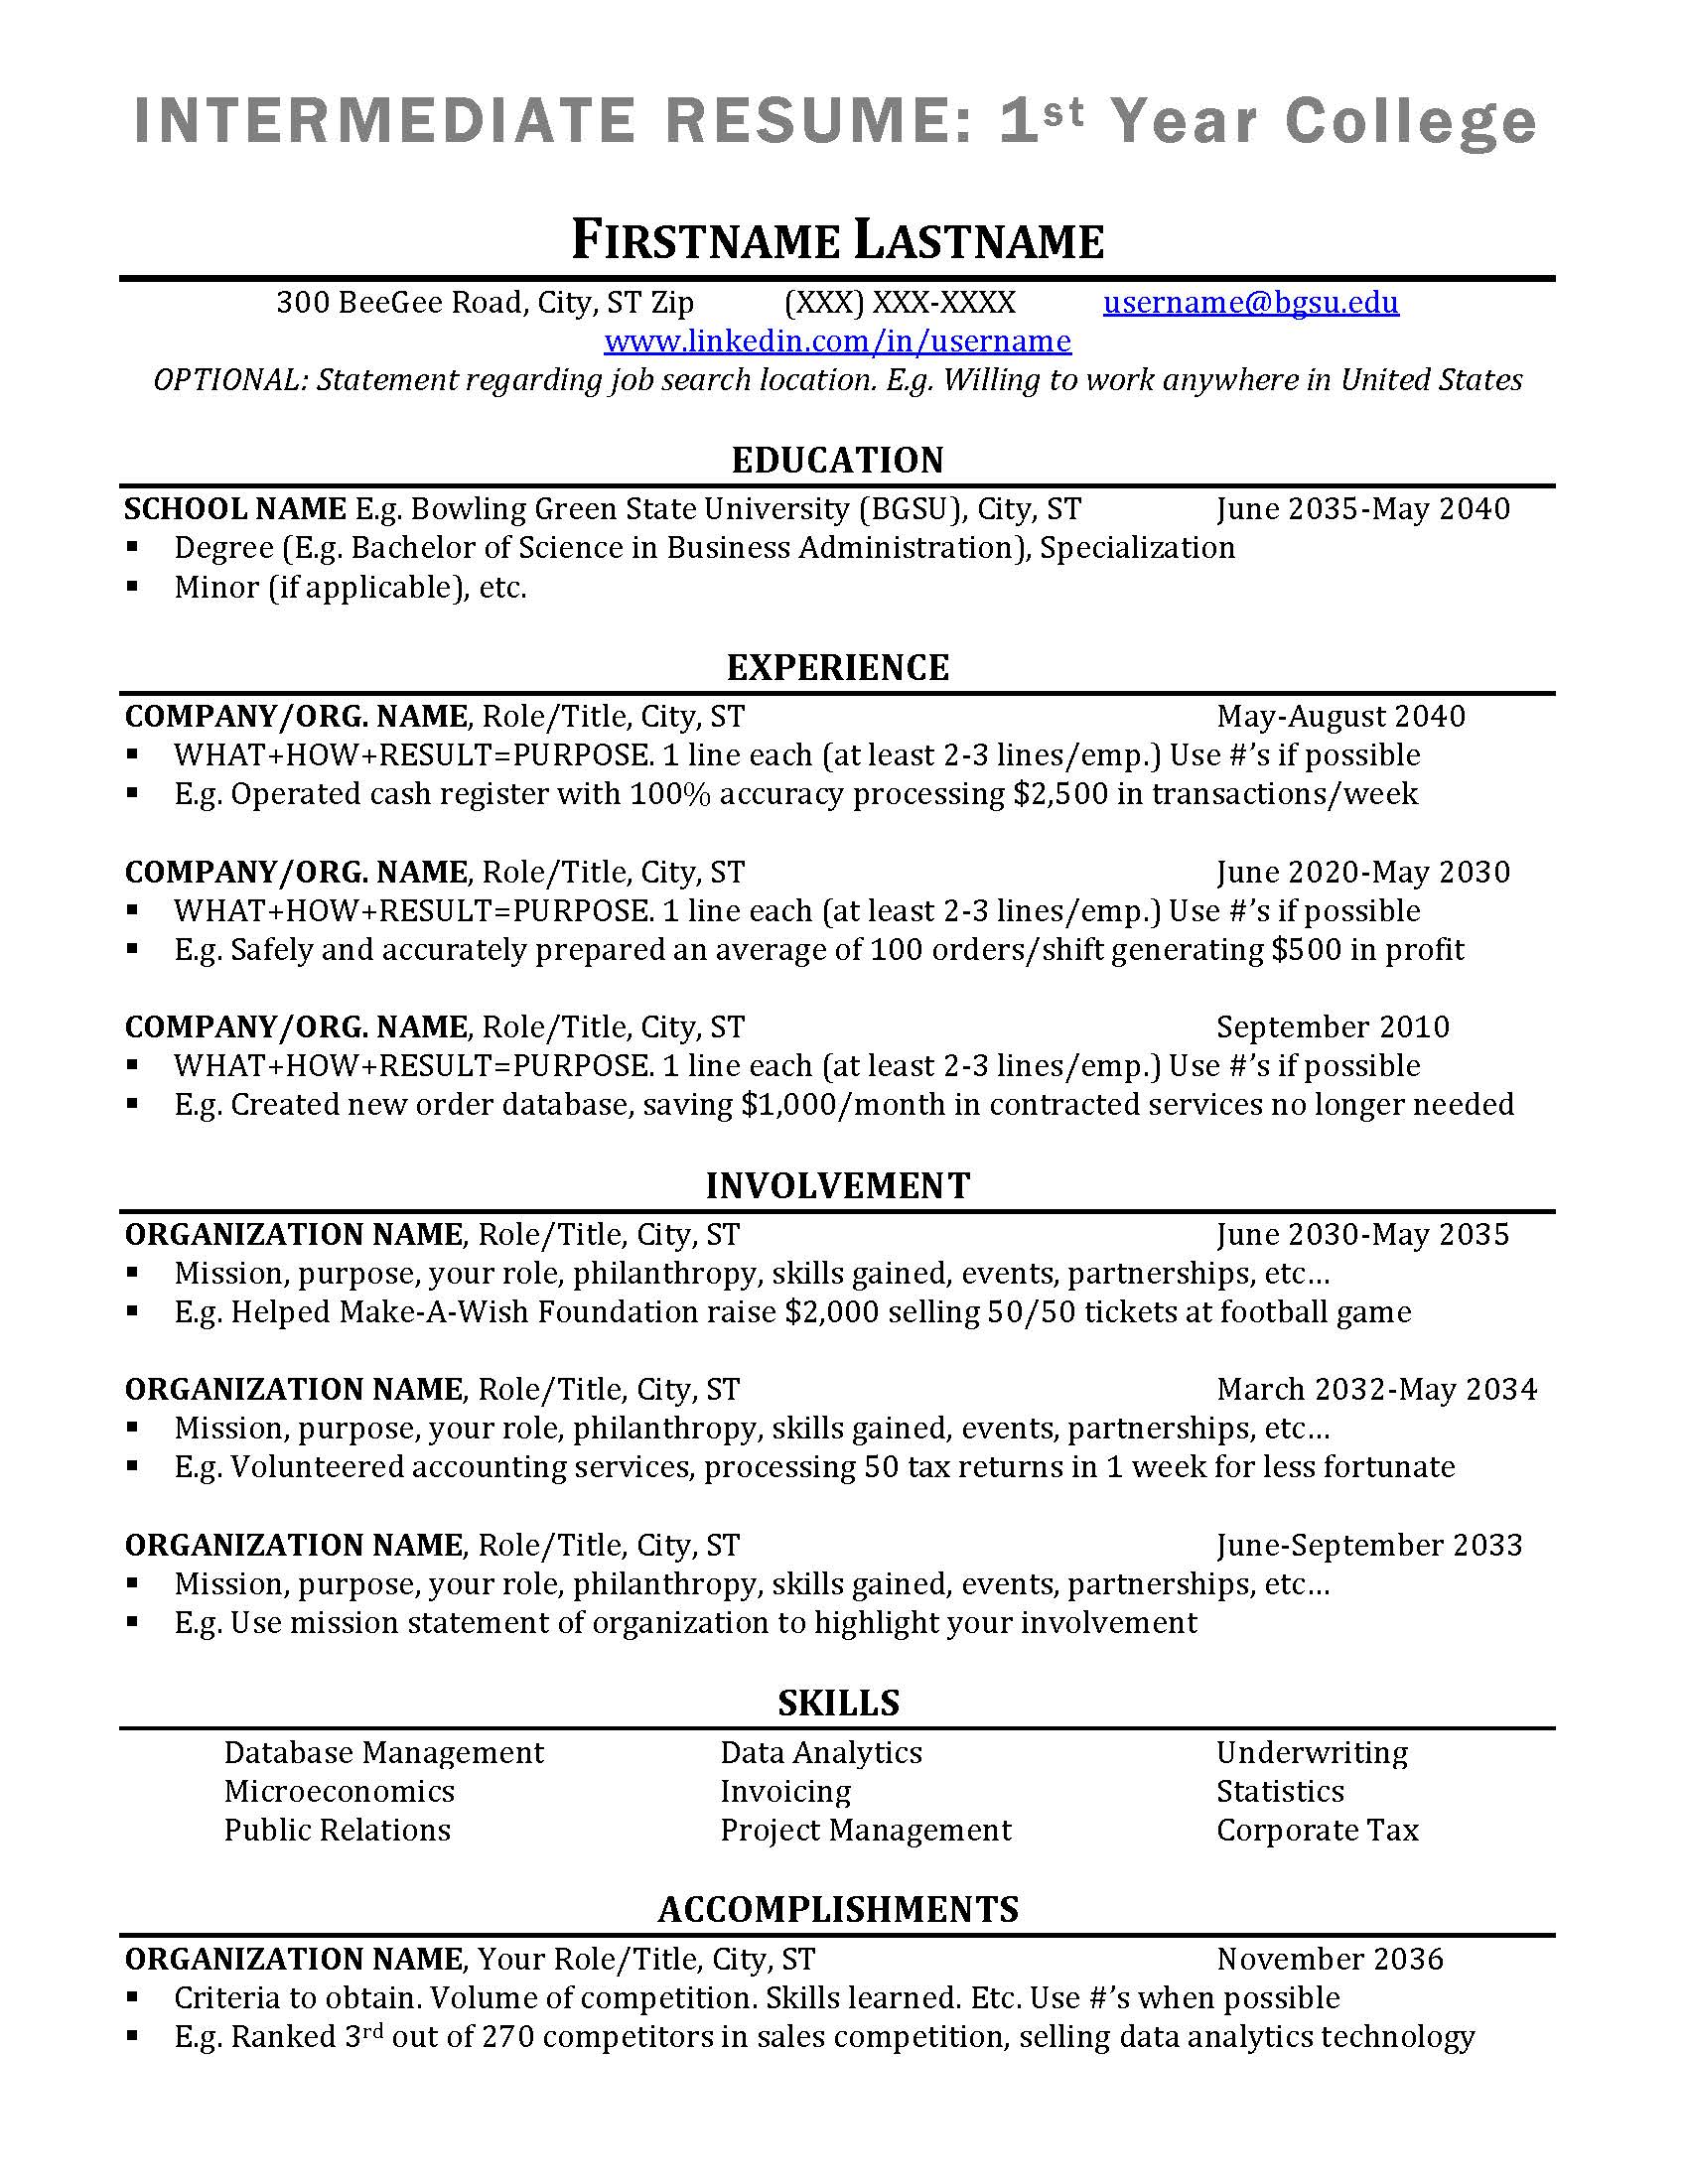 INTERMEDIATE-Resume-Outline-update